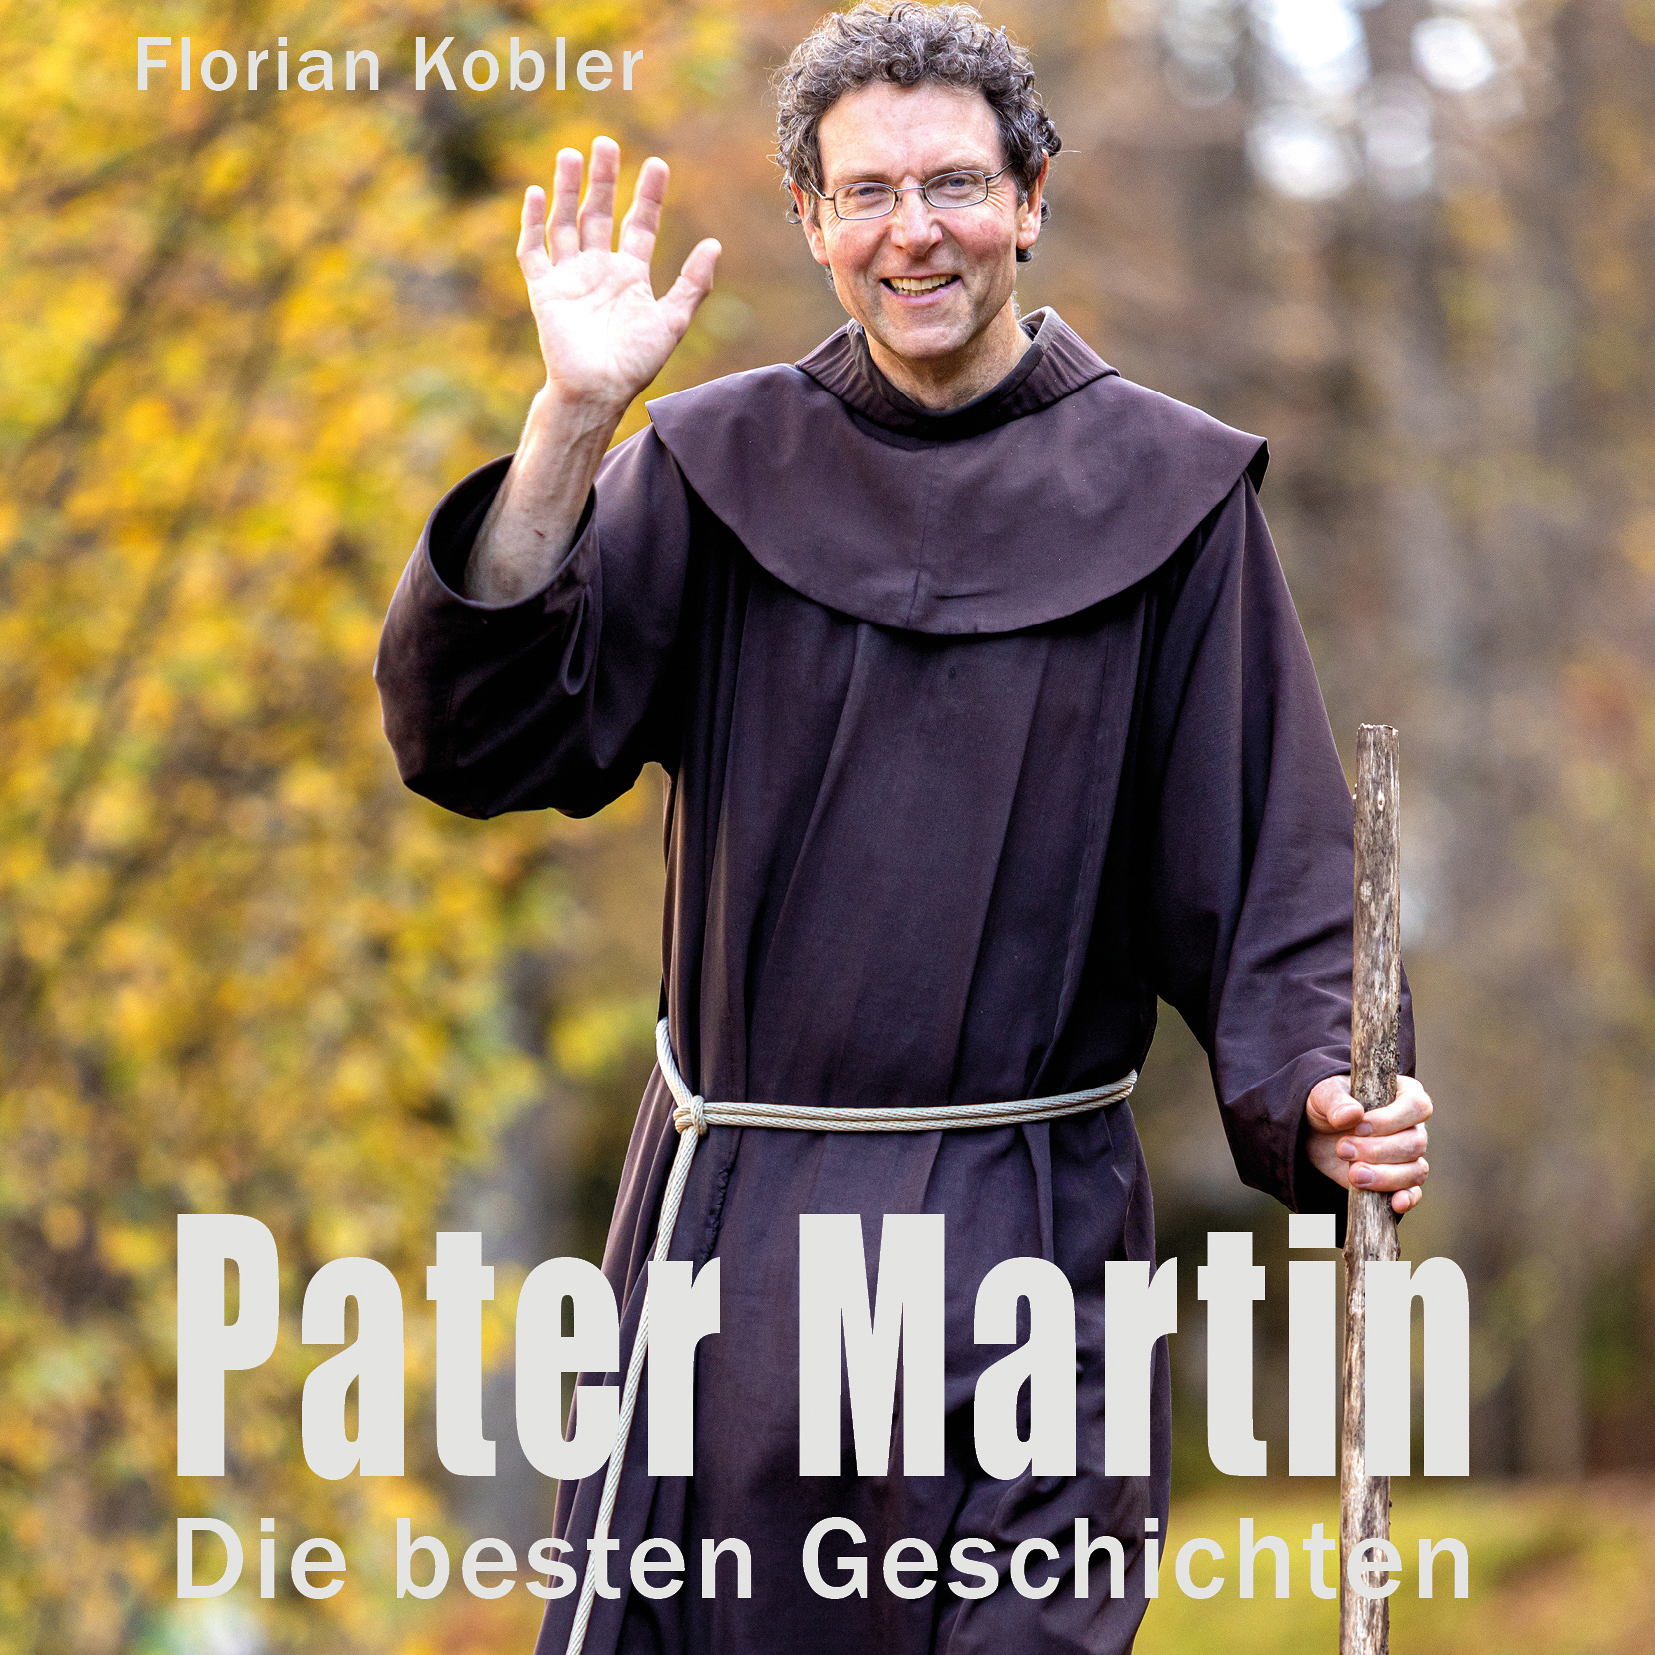 Die besten Geschichten mit Pater Martin